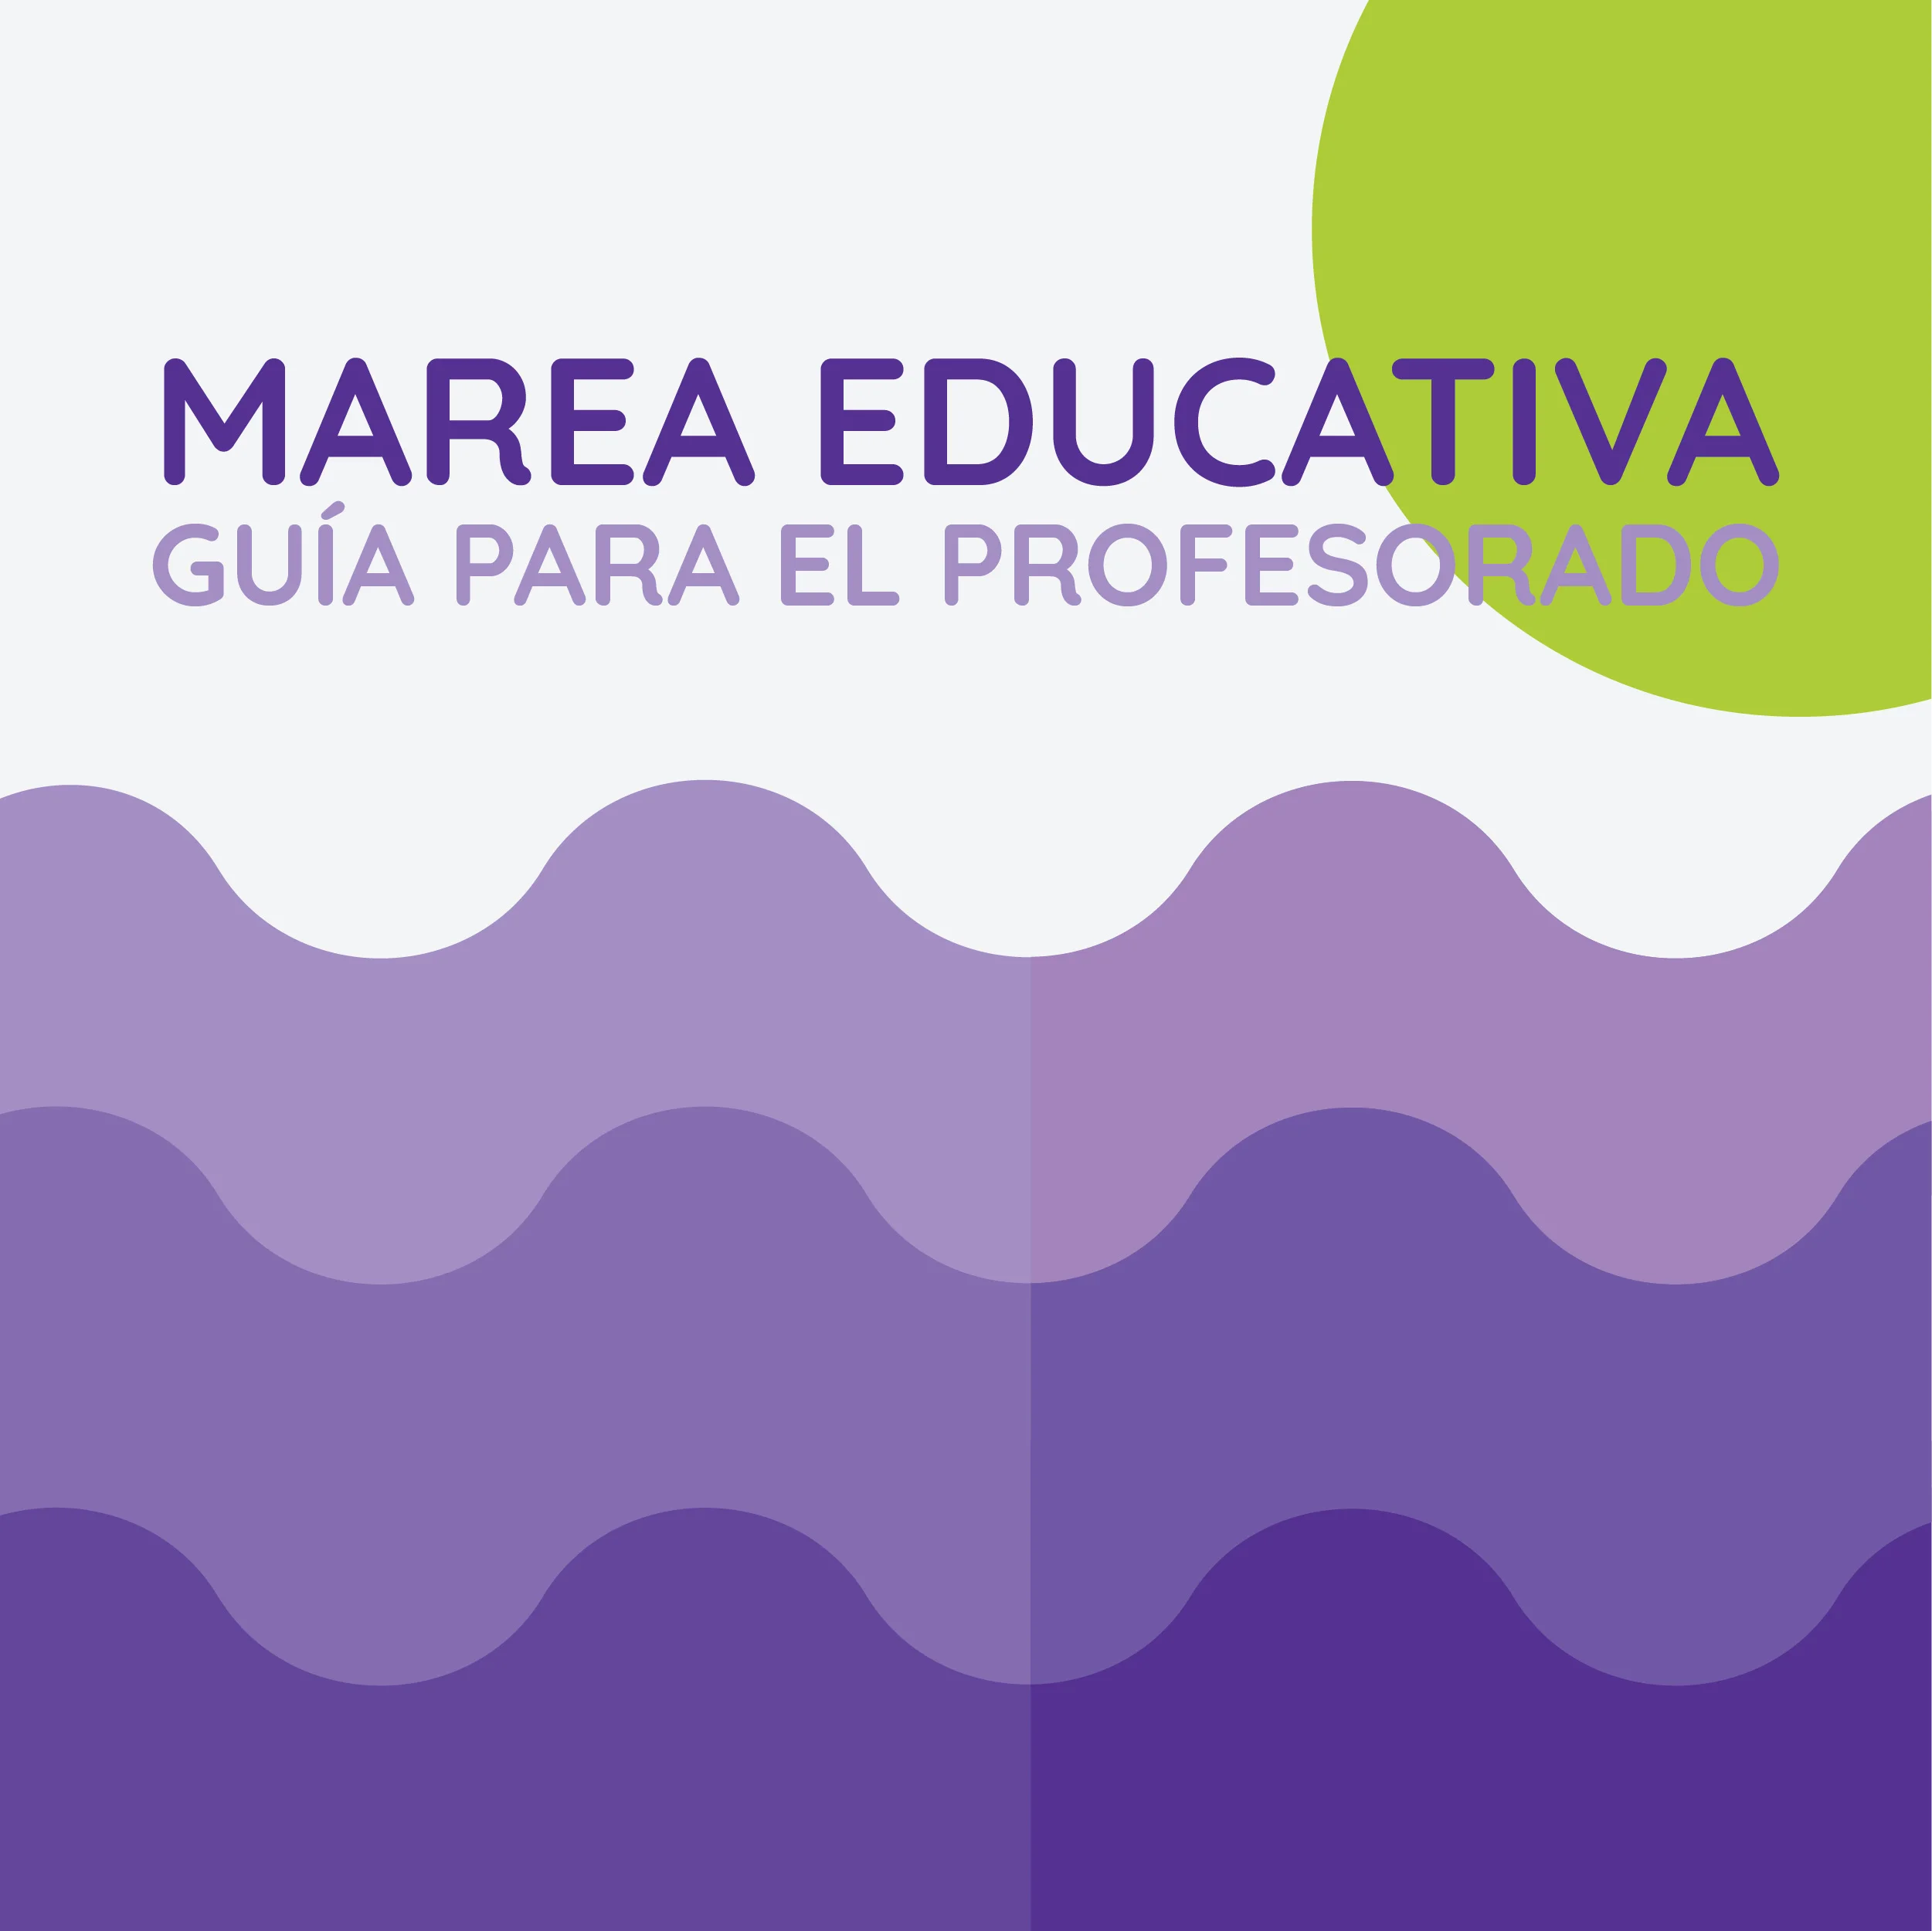 Ilustración simulando las olas del mar en color morado con un circulo verde en la parte superior derecha representando el sol La imagen dice Marea Educativa Guias para el profesorado